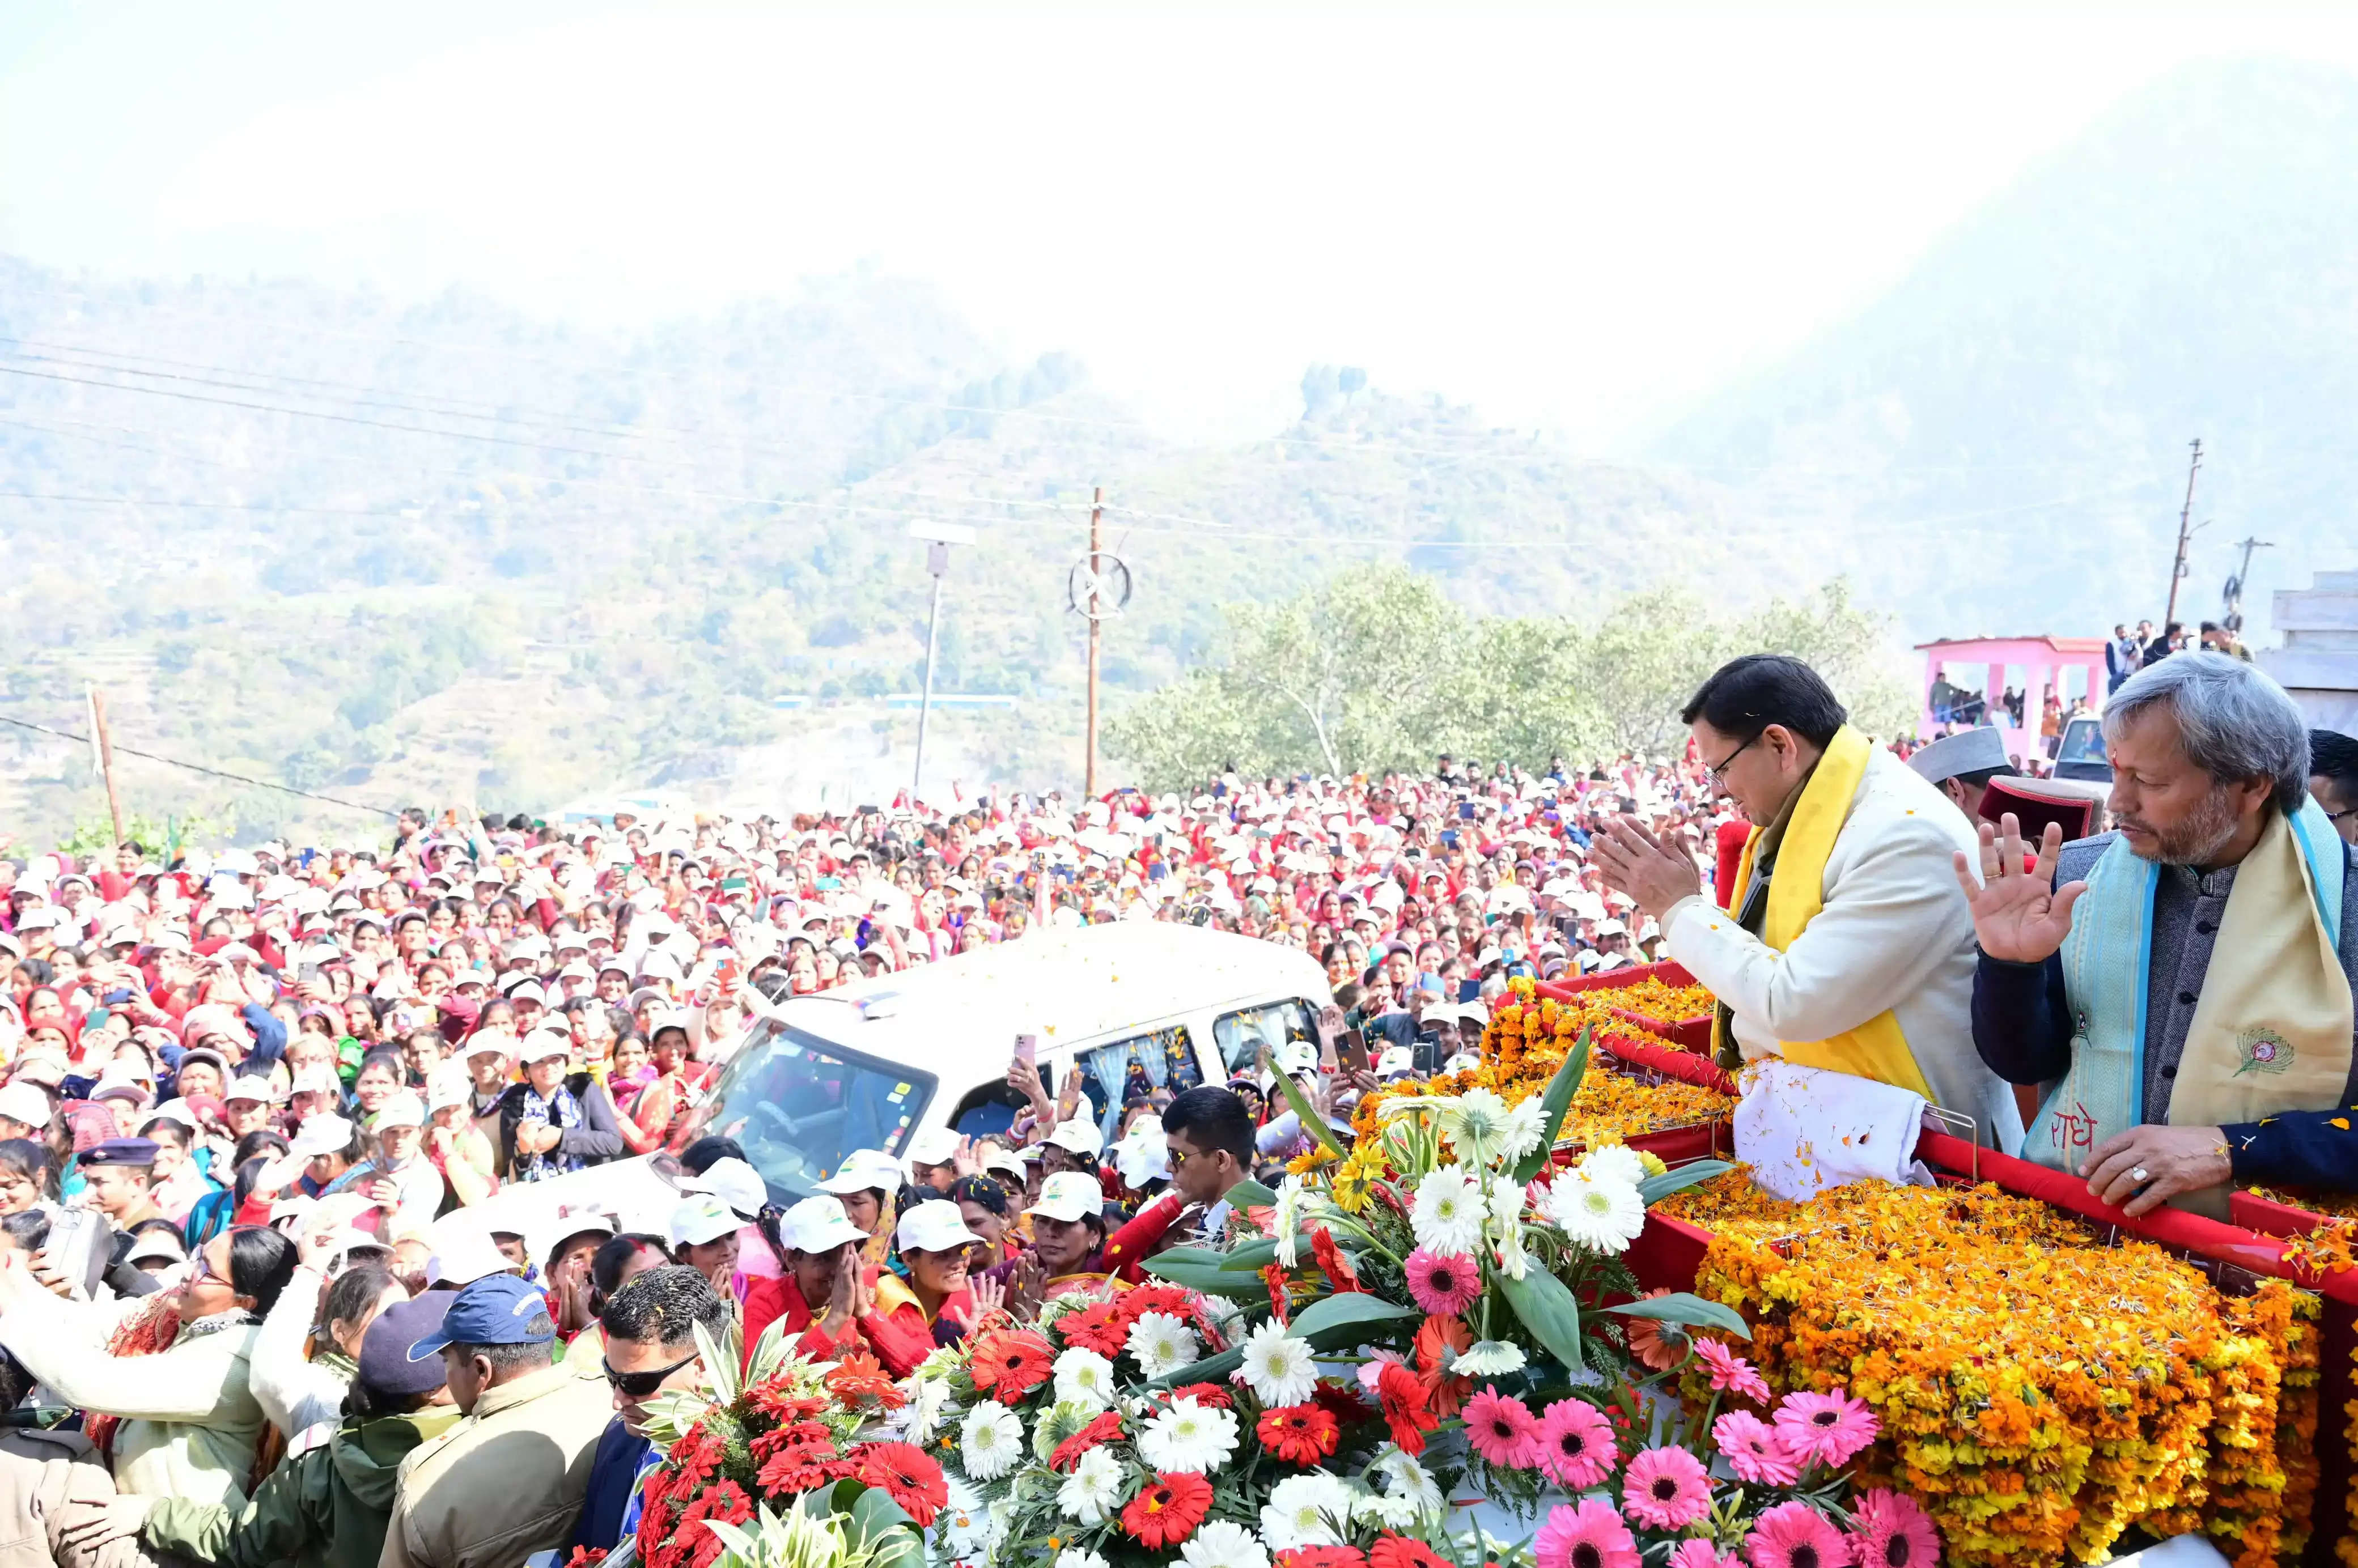 मुख्यमंत्री श्री पुष्कर सिंह धामी ने बृहस्पतिवार को गौचर में आयोजित ‘नंदागौरा’ महोत्सव में प्रतिभाग किया।